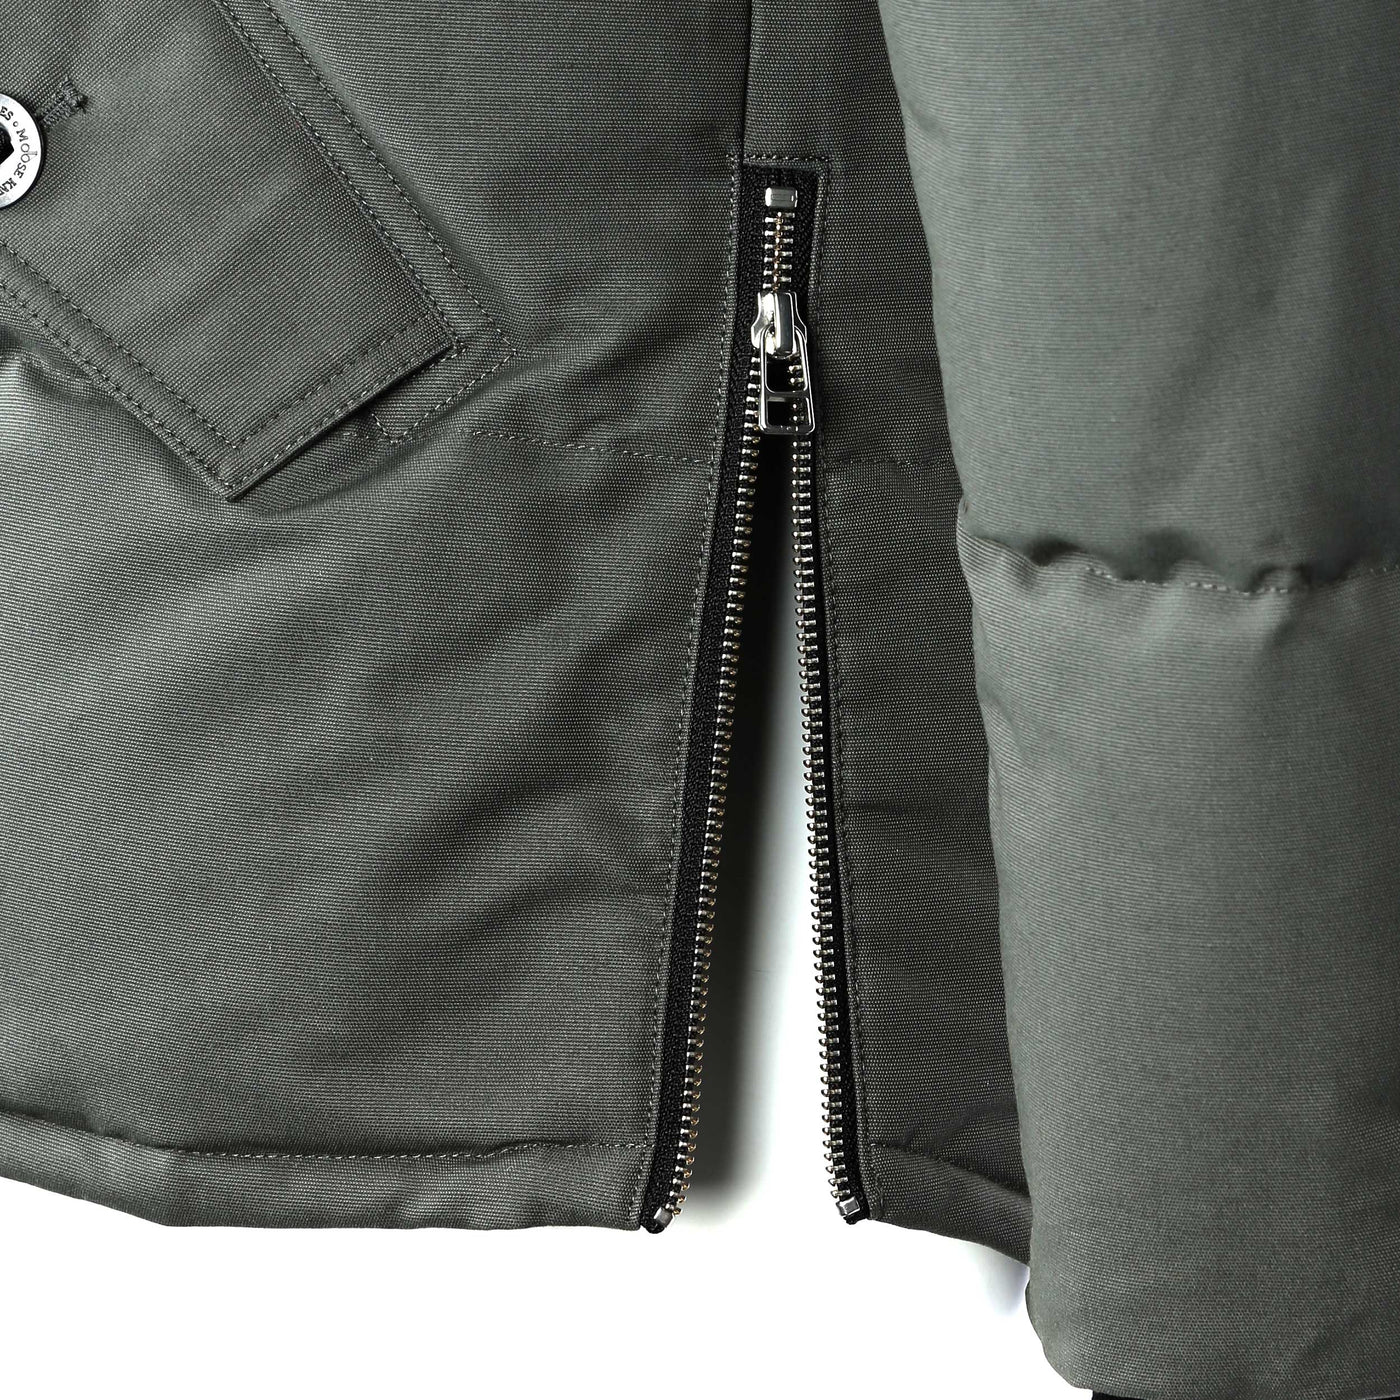 Moose Knuckles 3Q Jacket in Forrest Hill & Black Fur Side Zip